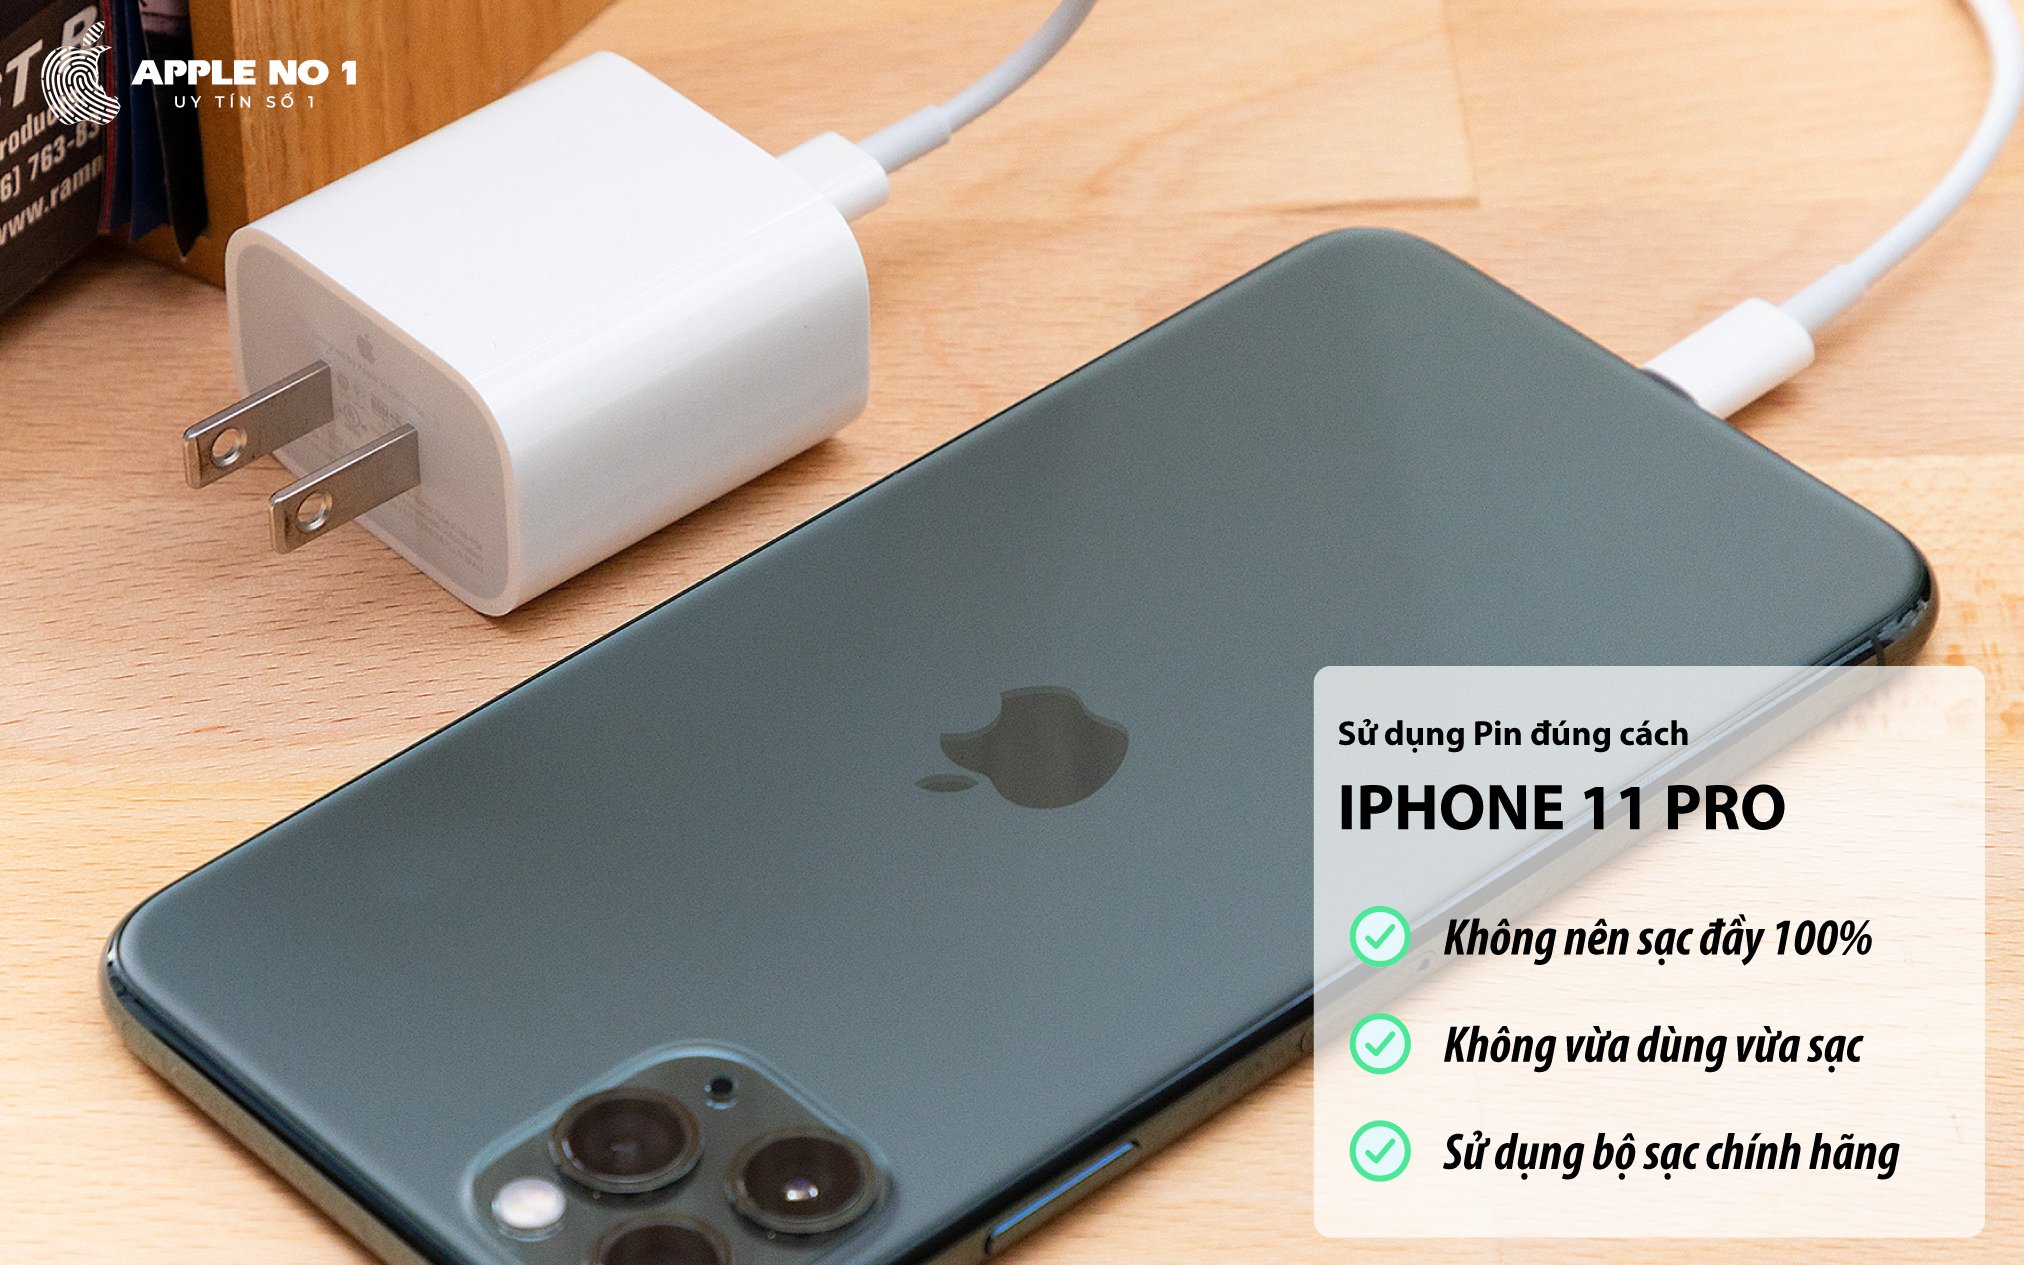 Hướng dẫn sử dụng pin đúng cách trên iPhone 11 Pro